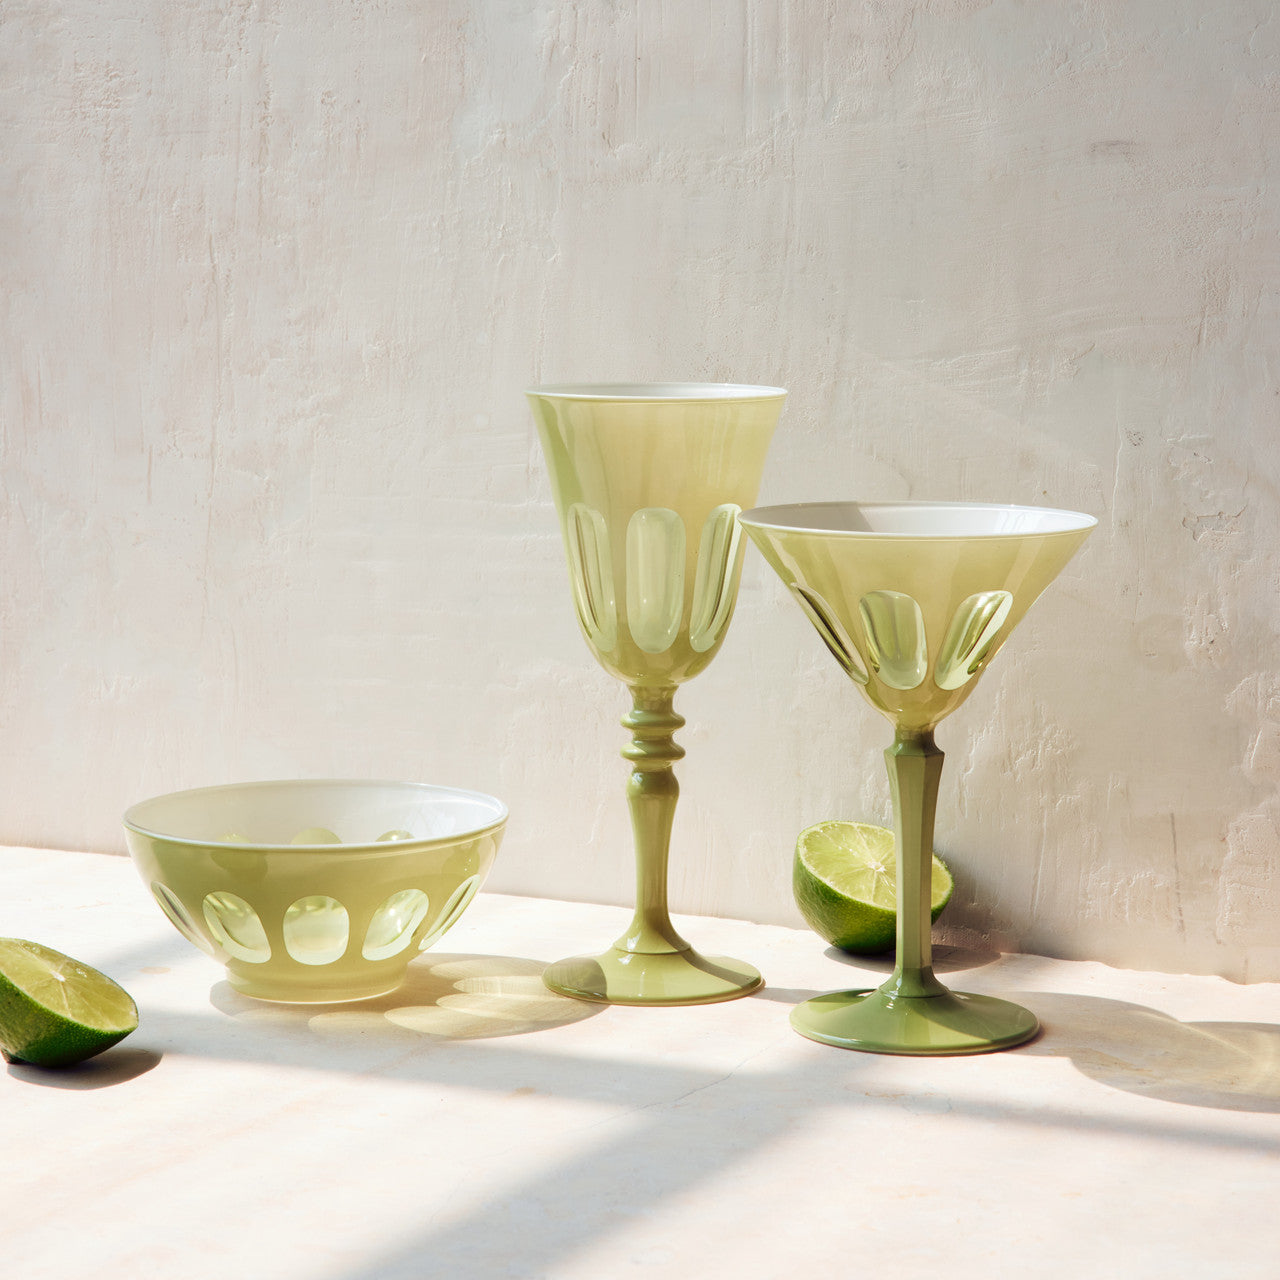 Set of 2 Rialto Wine Glasses- Color: Pale Sage